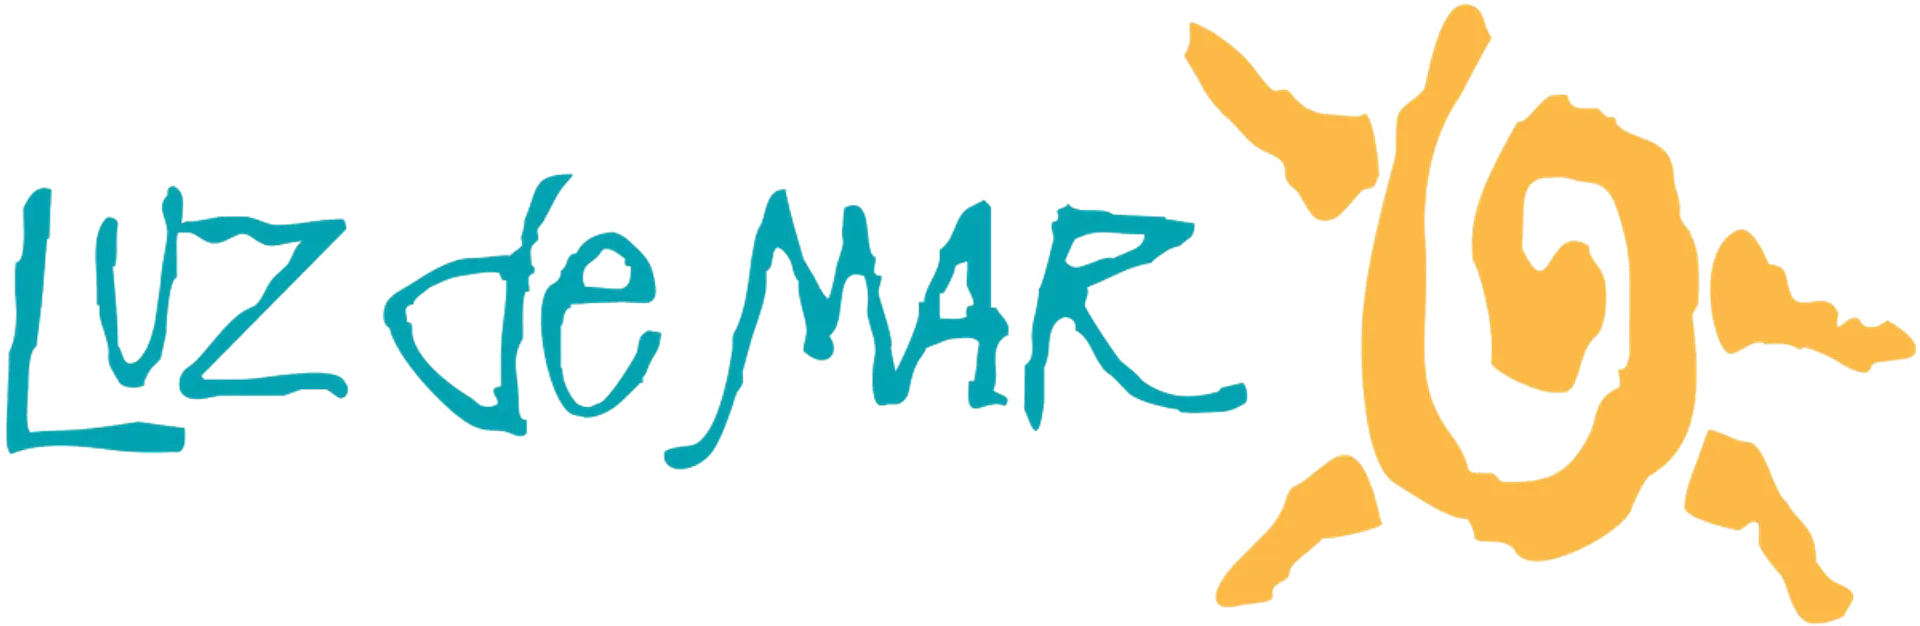 LUZ DE MAR logo